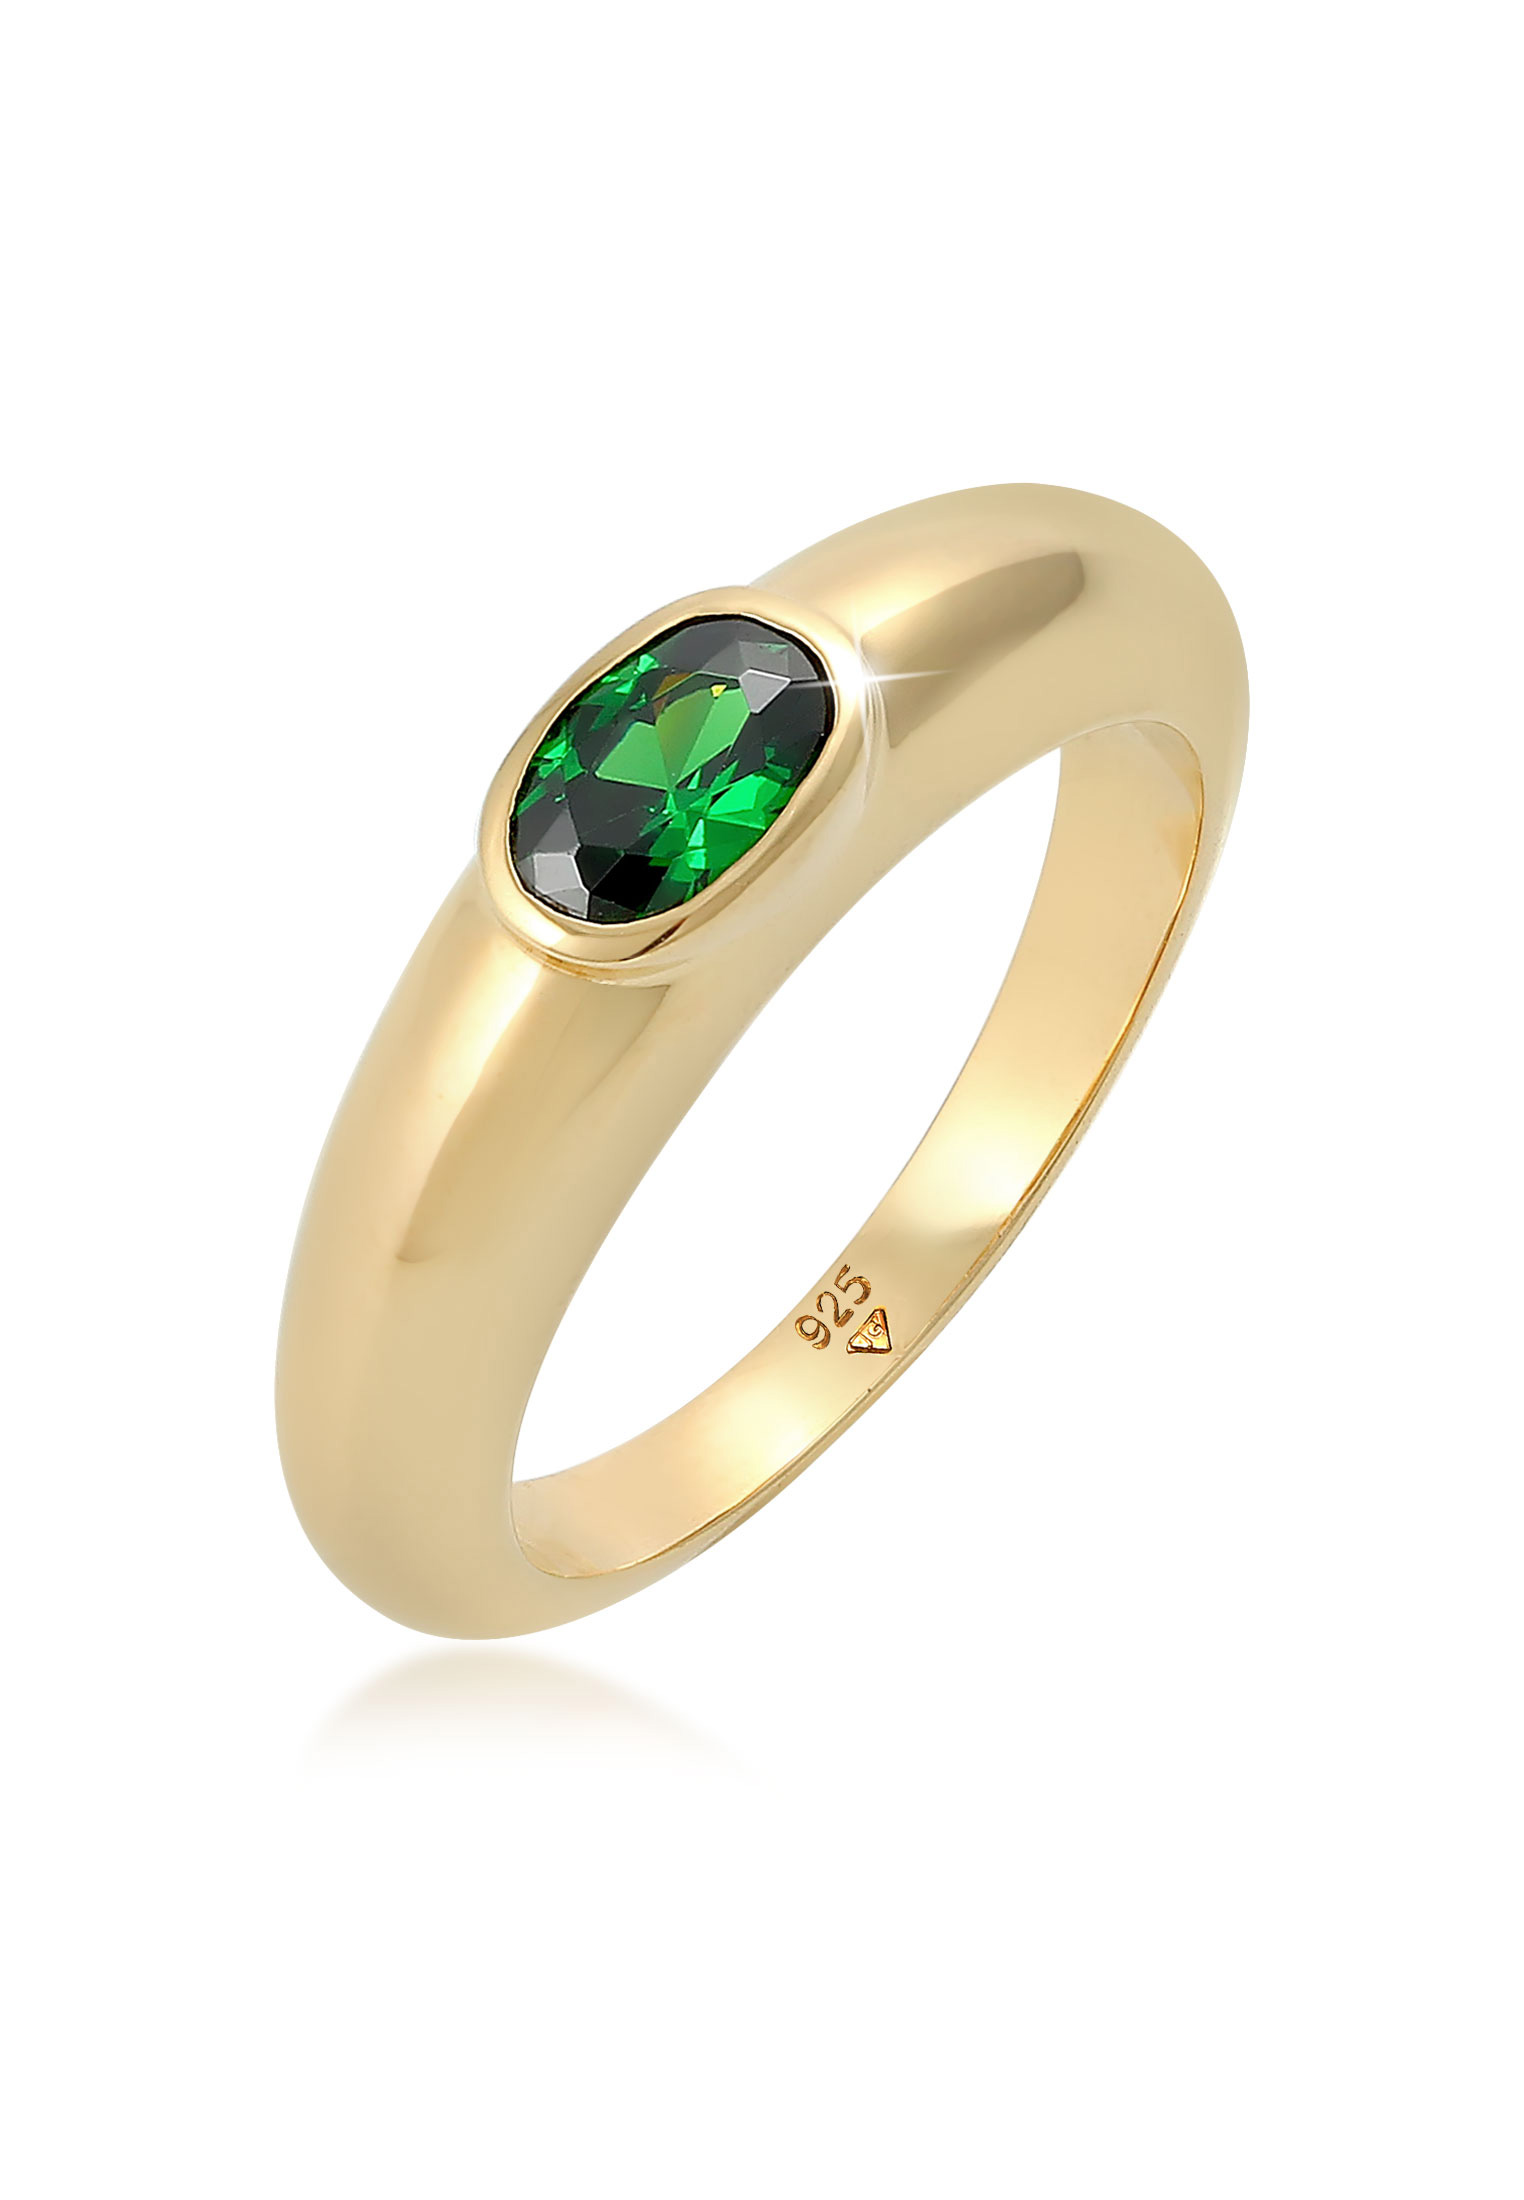 ELLI GERMANY 環形環形紙牌橢圓形綠色鋯石水晶金鍍金